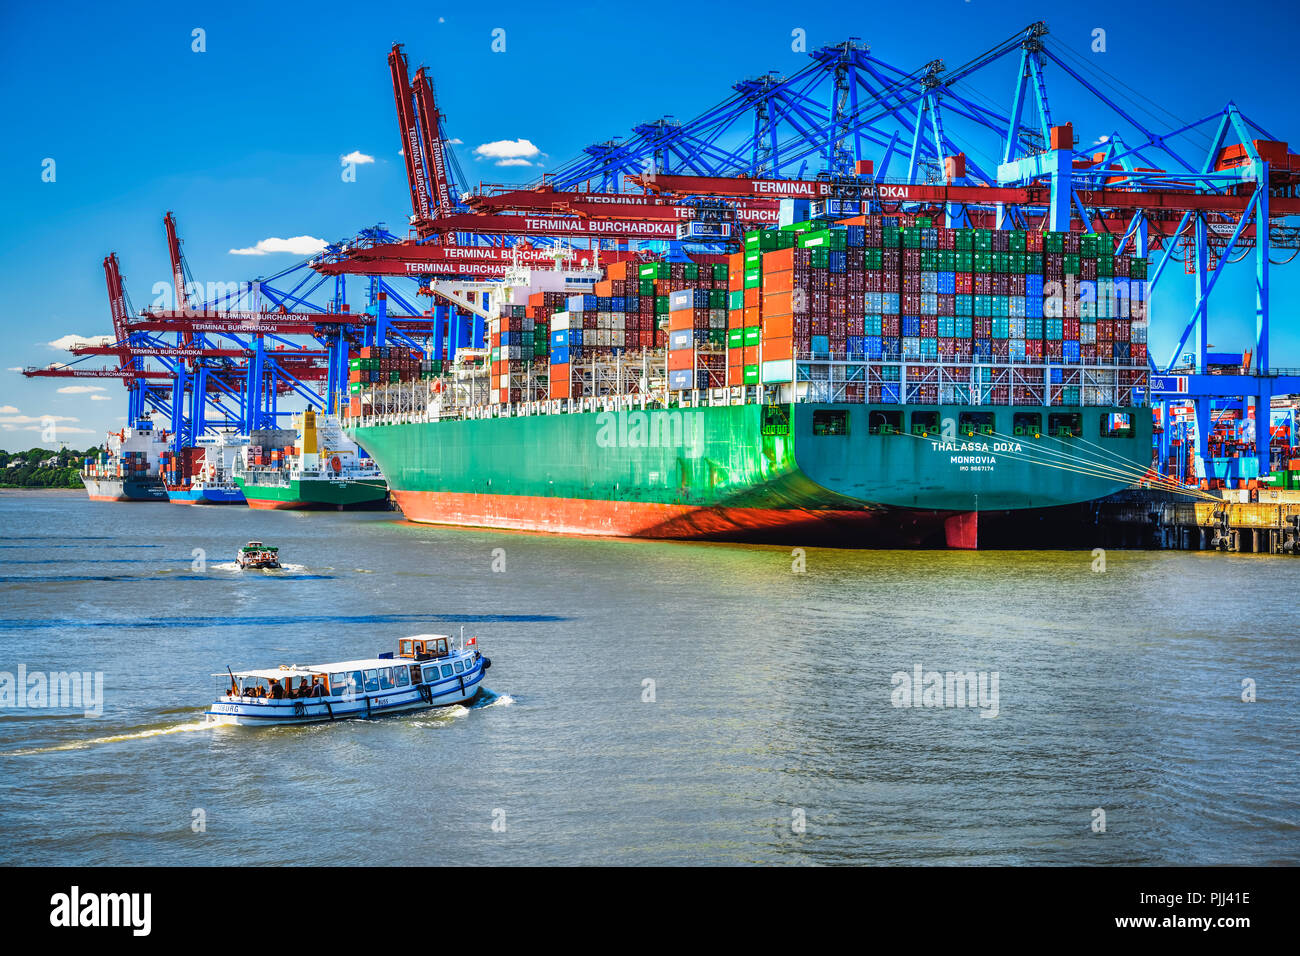 Contenitore freighter in Waltershofer porto di Amburgo, Germania, Europa Containerfrachter Waltershofer im Hafen in Amburgo, Deutschland, Europa Foto Stock